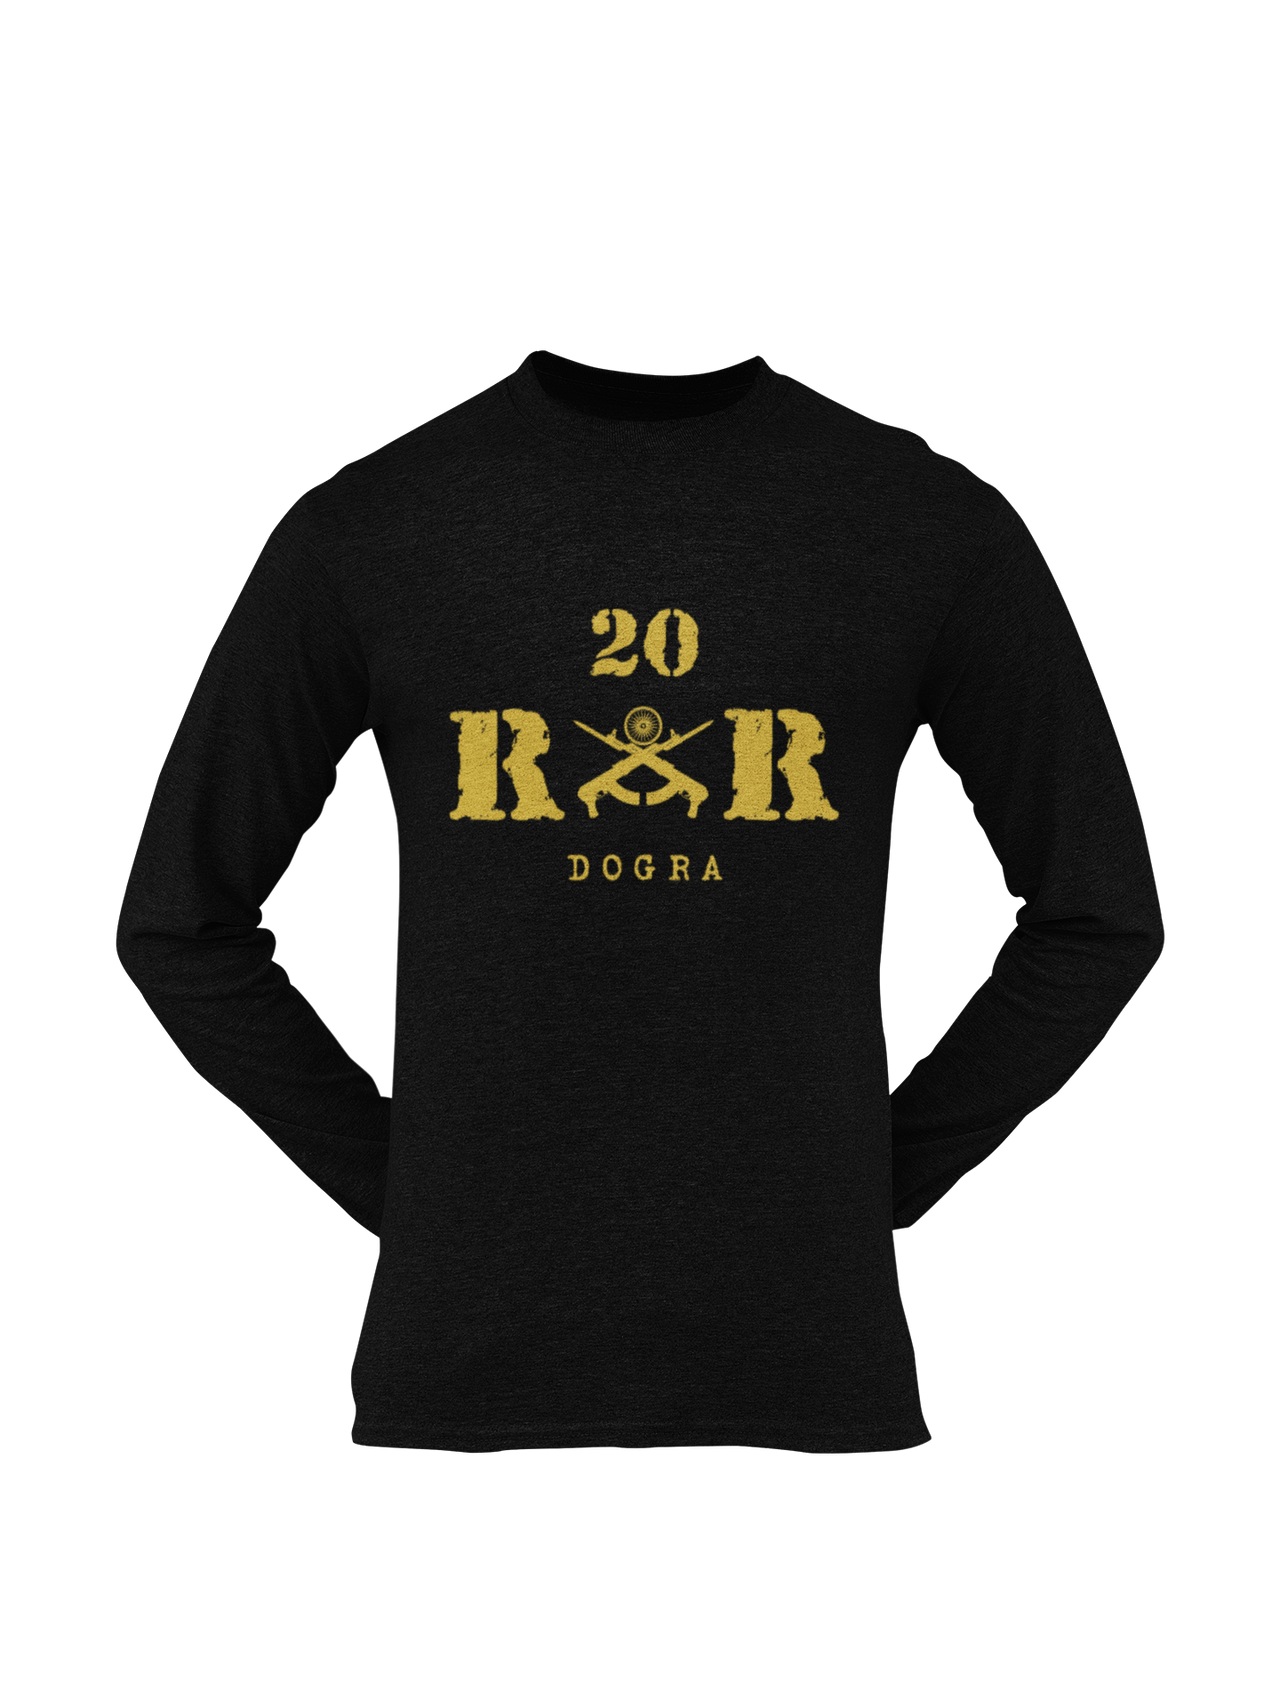 Rashtriya Rifles T-shirt - 20 RR Dogra (Men)